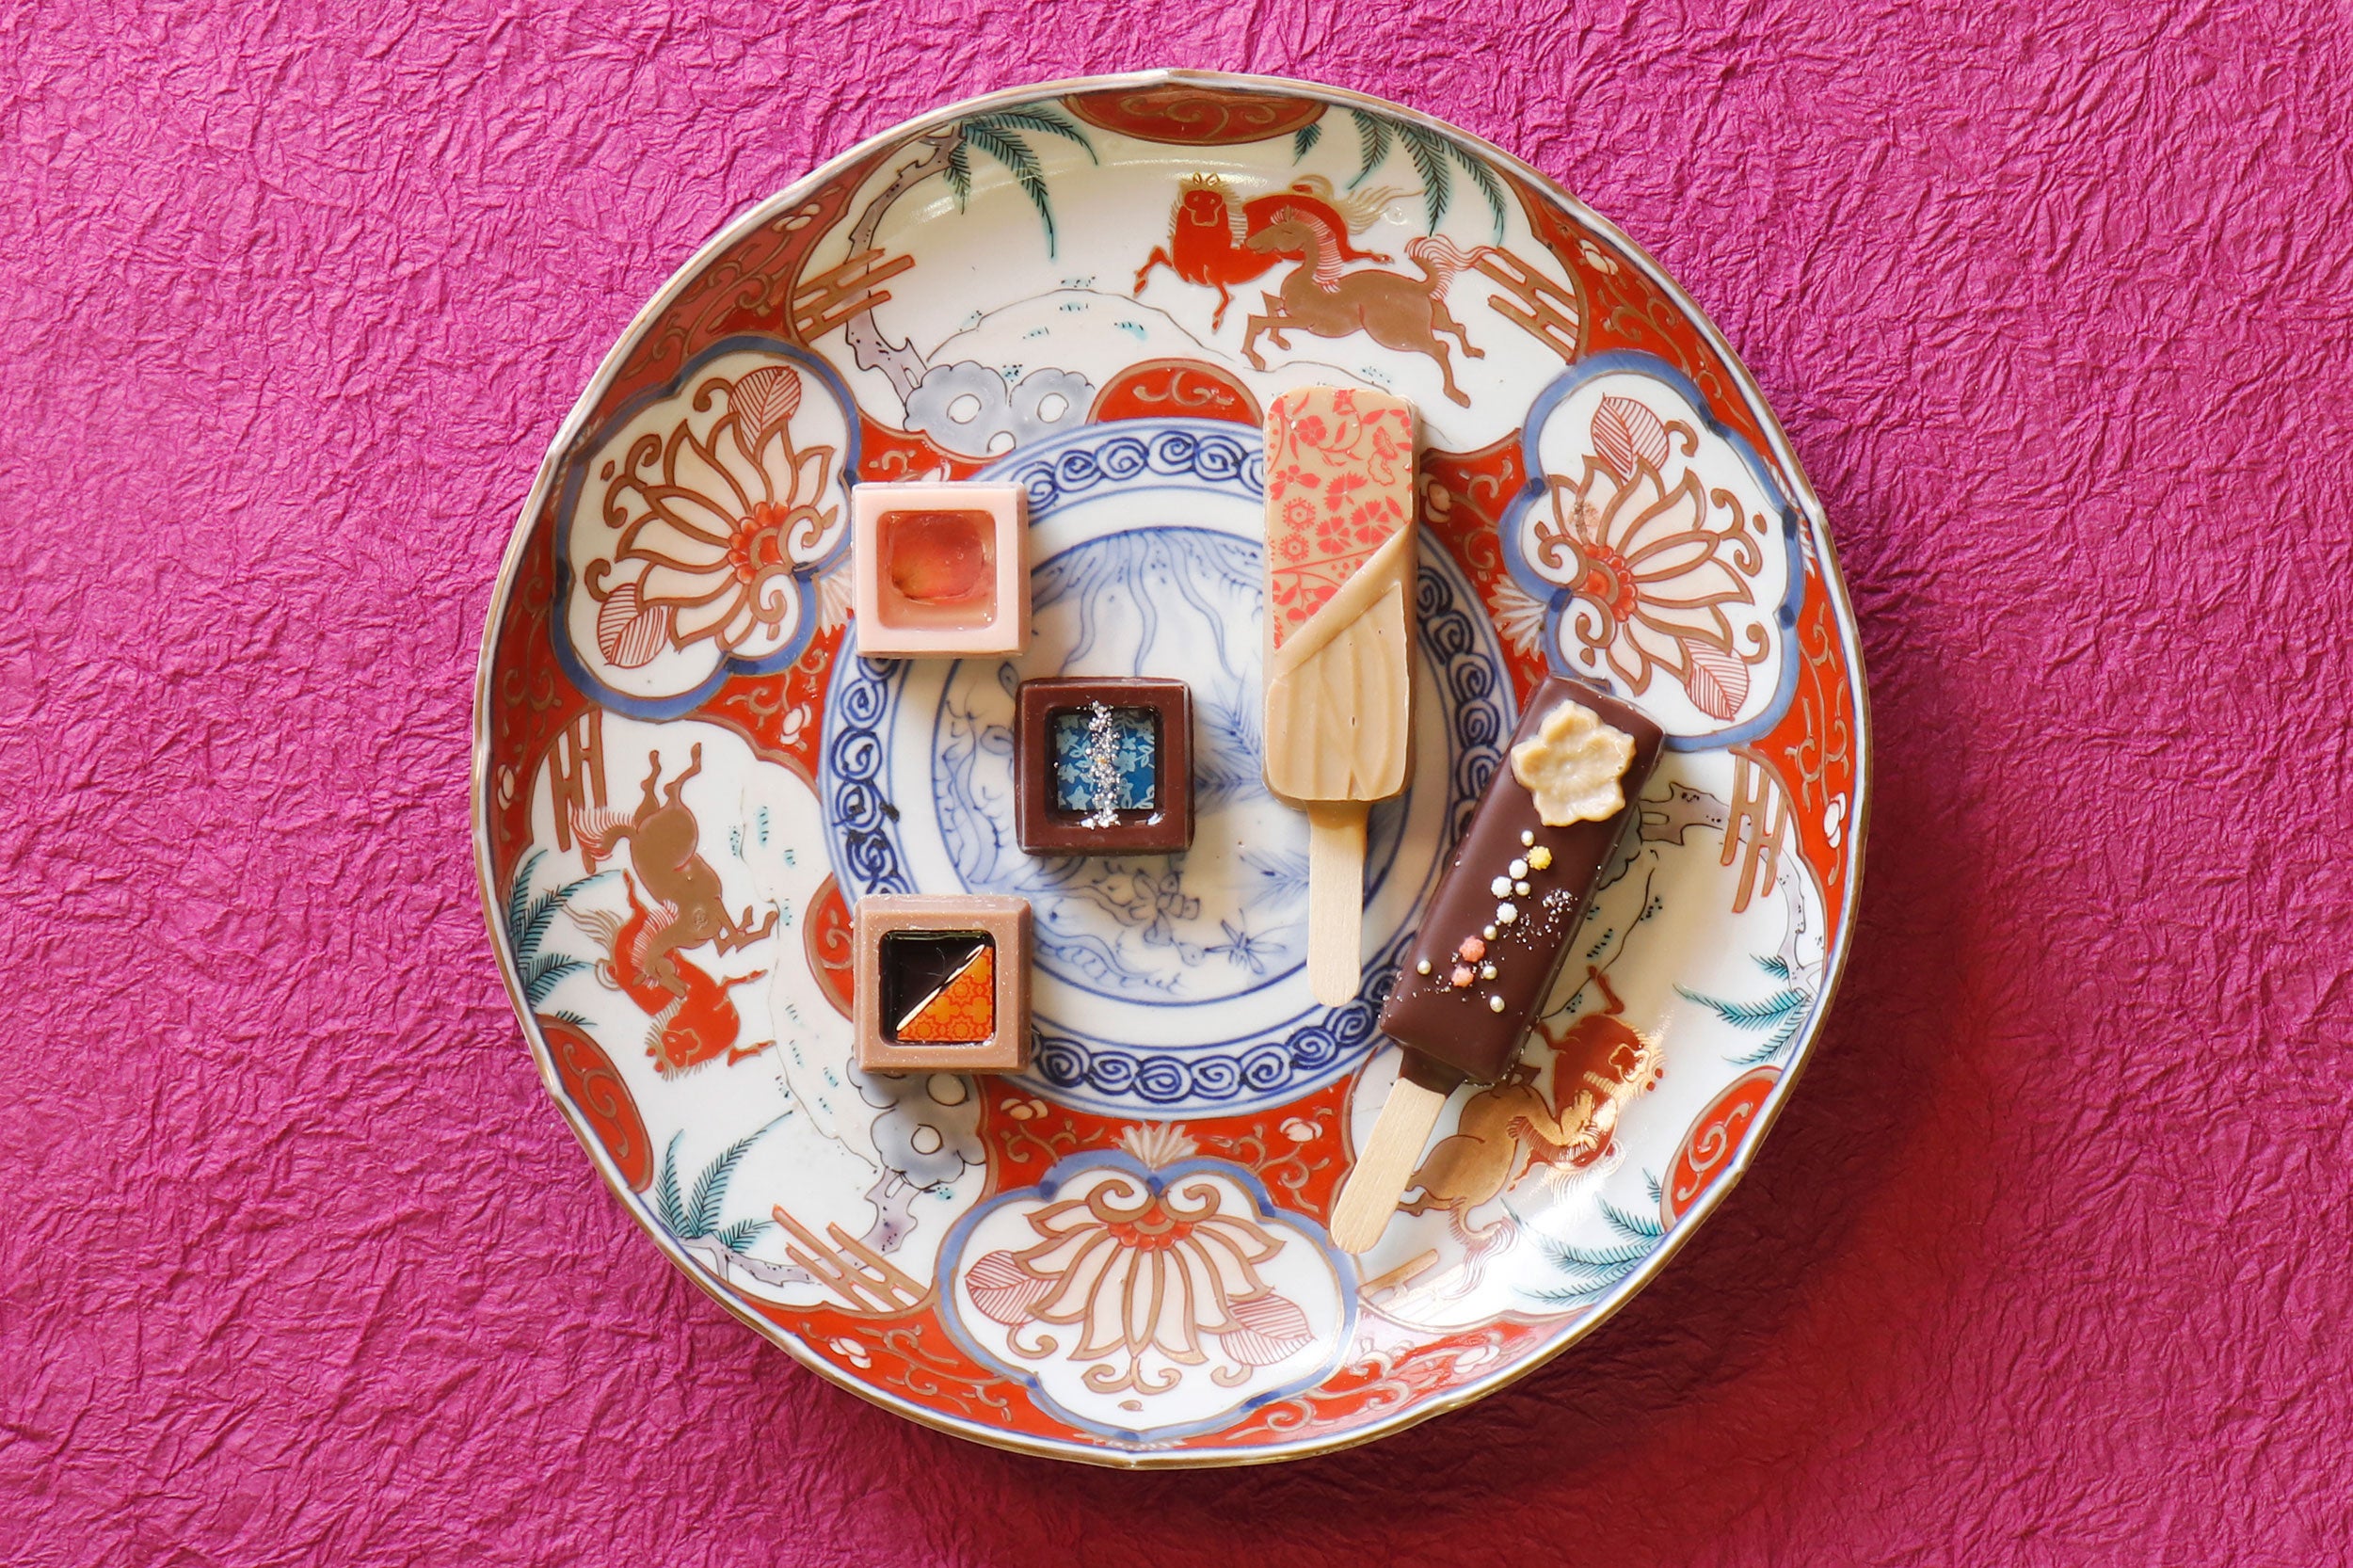 日本の伝統美に彩られる京都のショコラ。「ベルアメール 京都別邸」のチョコレートと、「奥田連峯堂」の古美術の組み合わせで、日本の伝統と美を再発見する企画 “日本の器と京都のショコラ”がスタート！